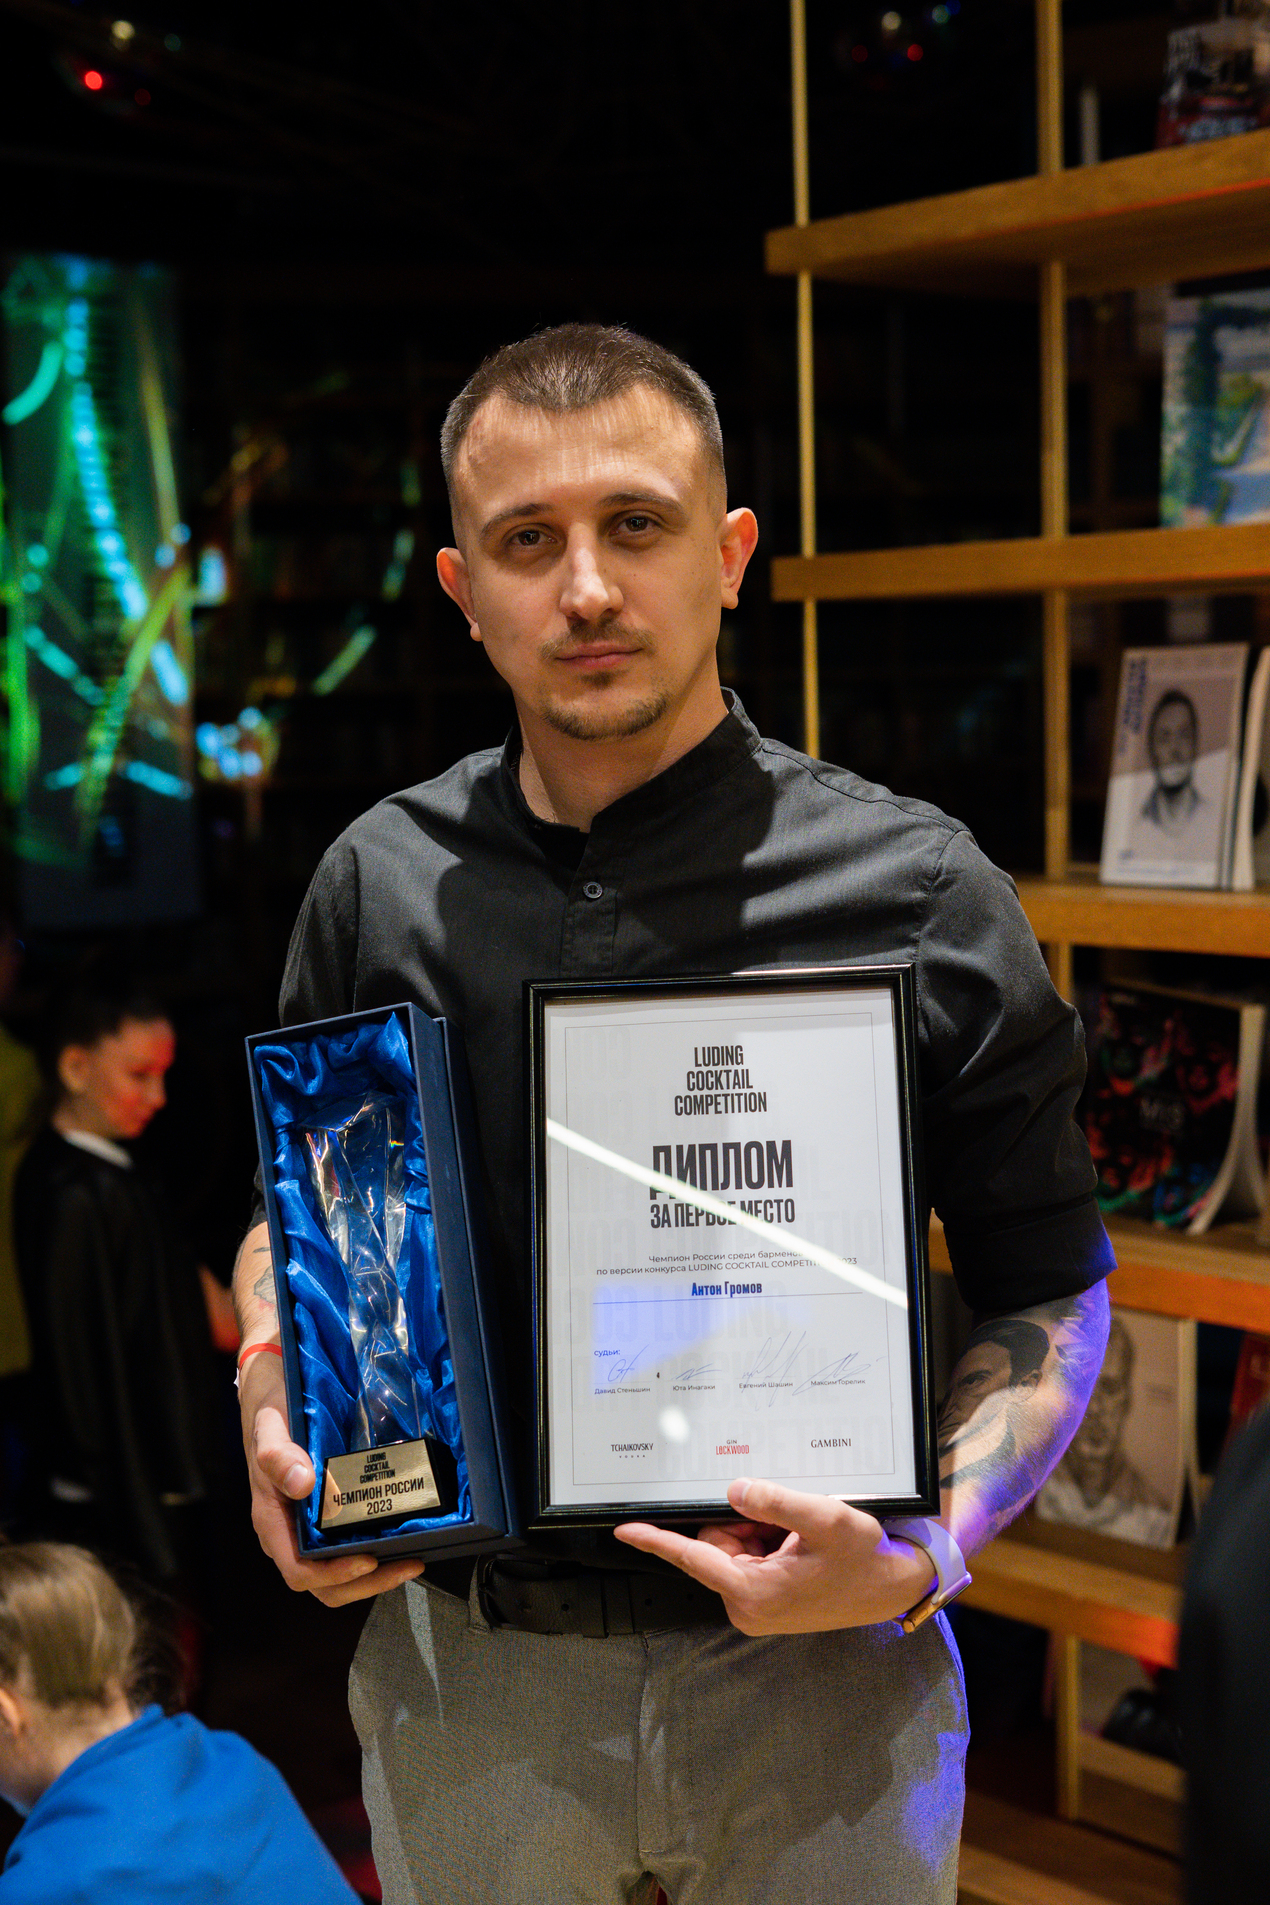 Определен победитель всероссийского конкурса среди бартендеров Luding Cocktail Competition 